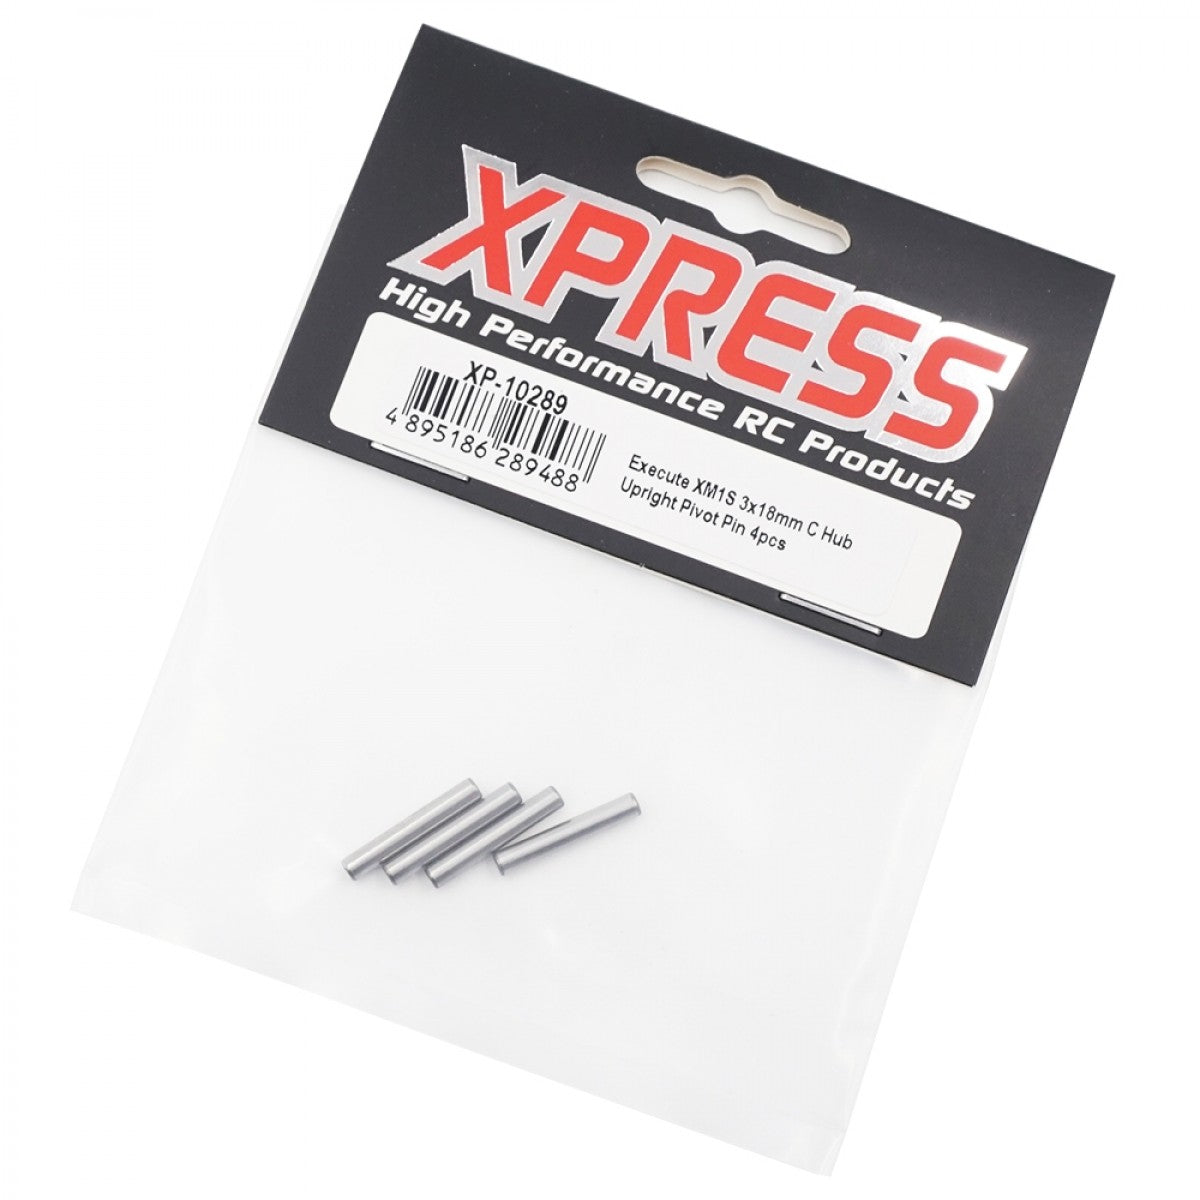 Xpress XP-10289 3x18mm C Hub Upright Pivot Pins 4pcs